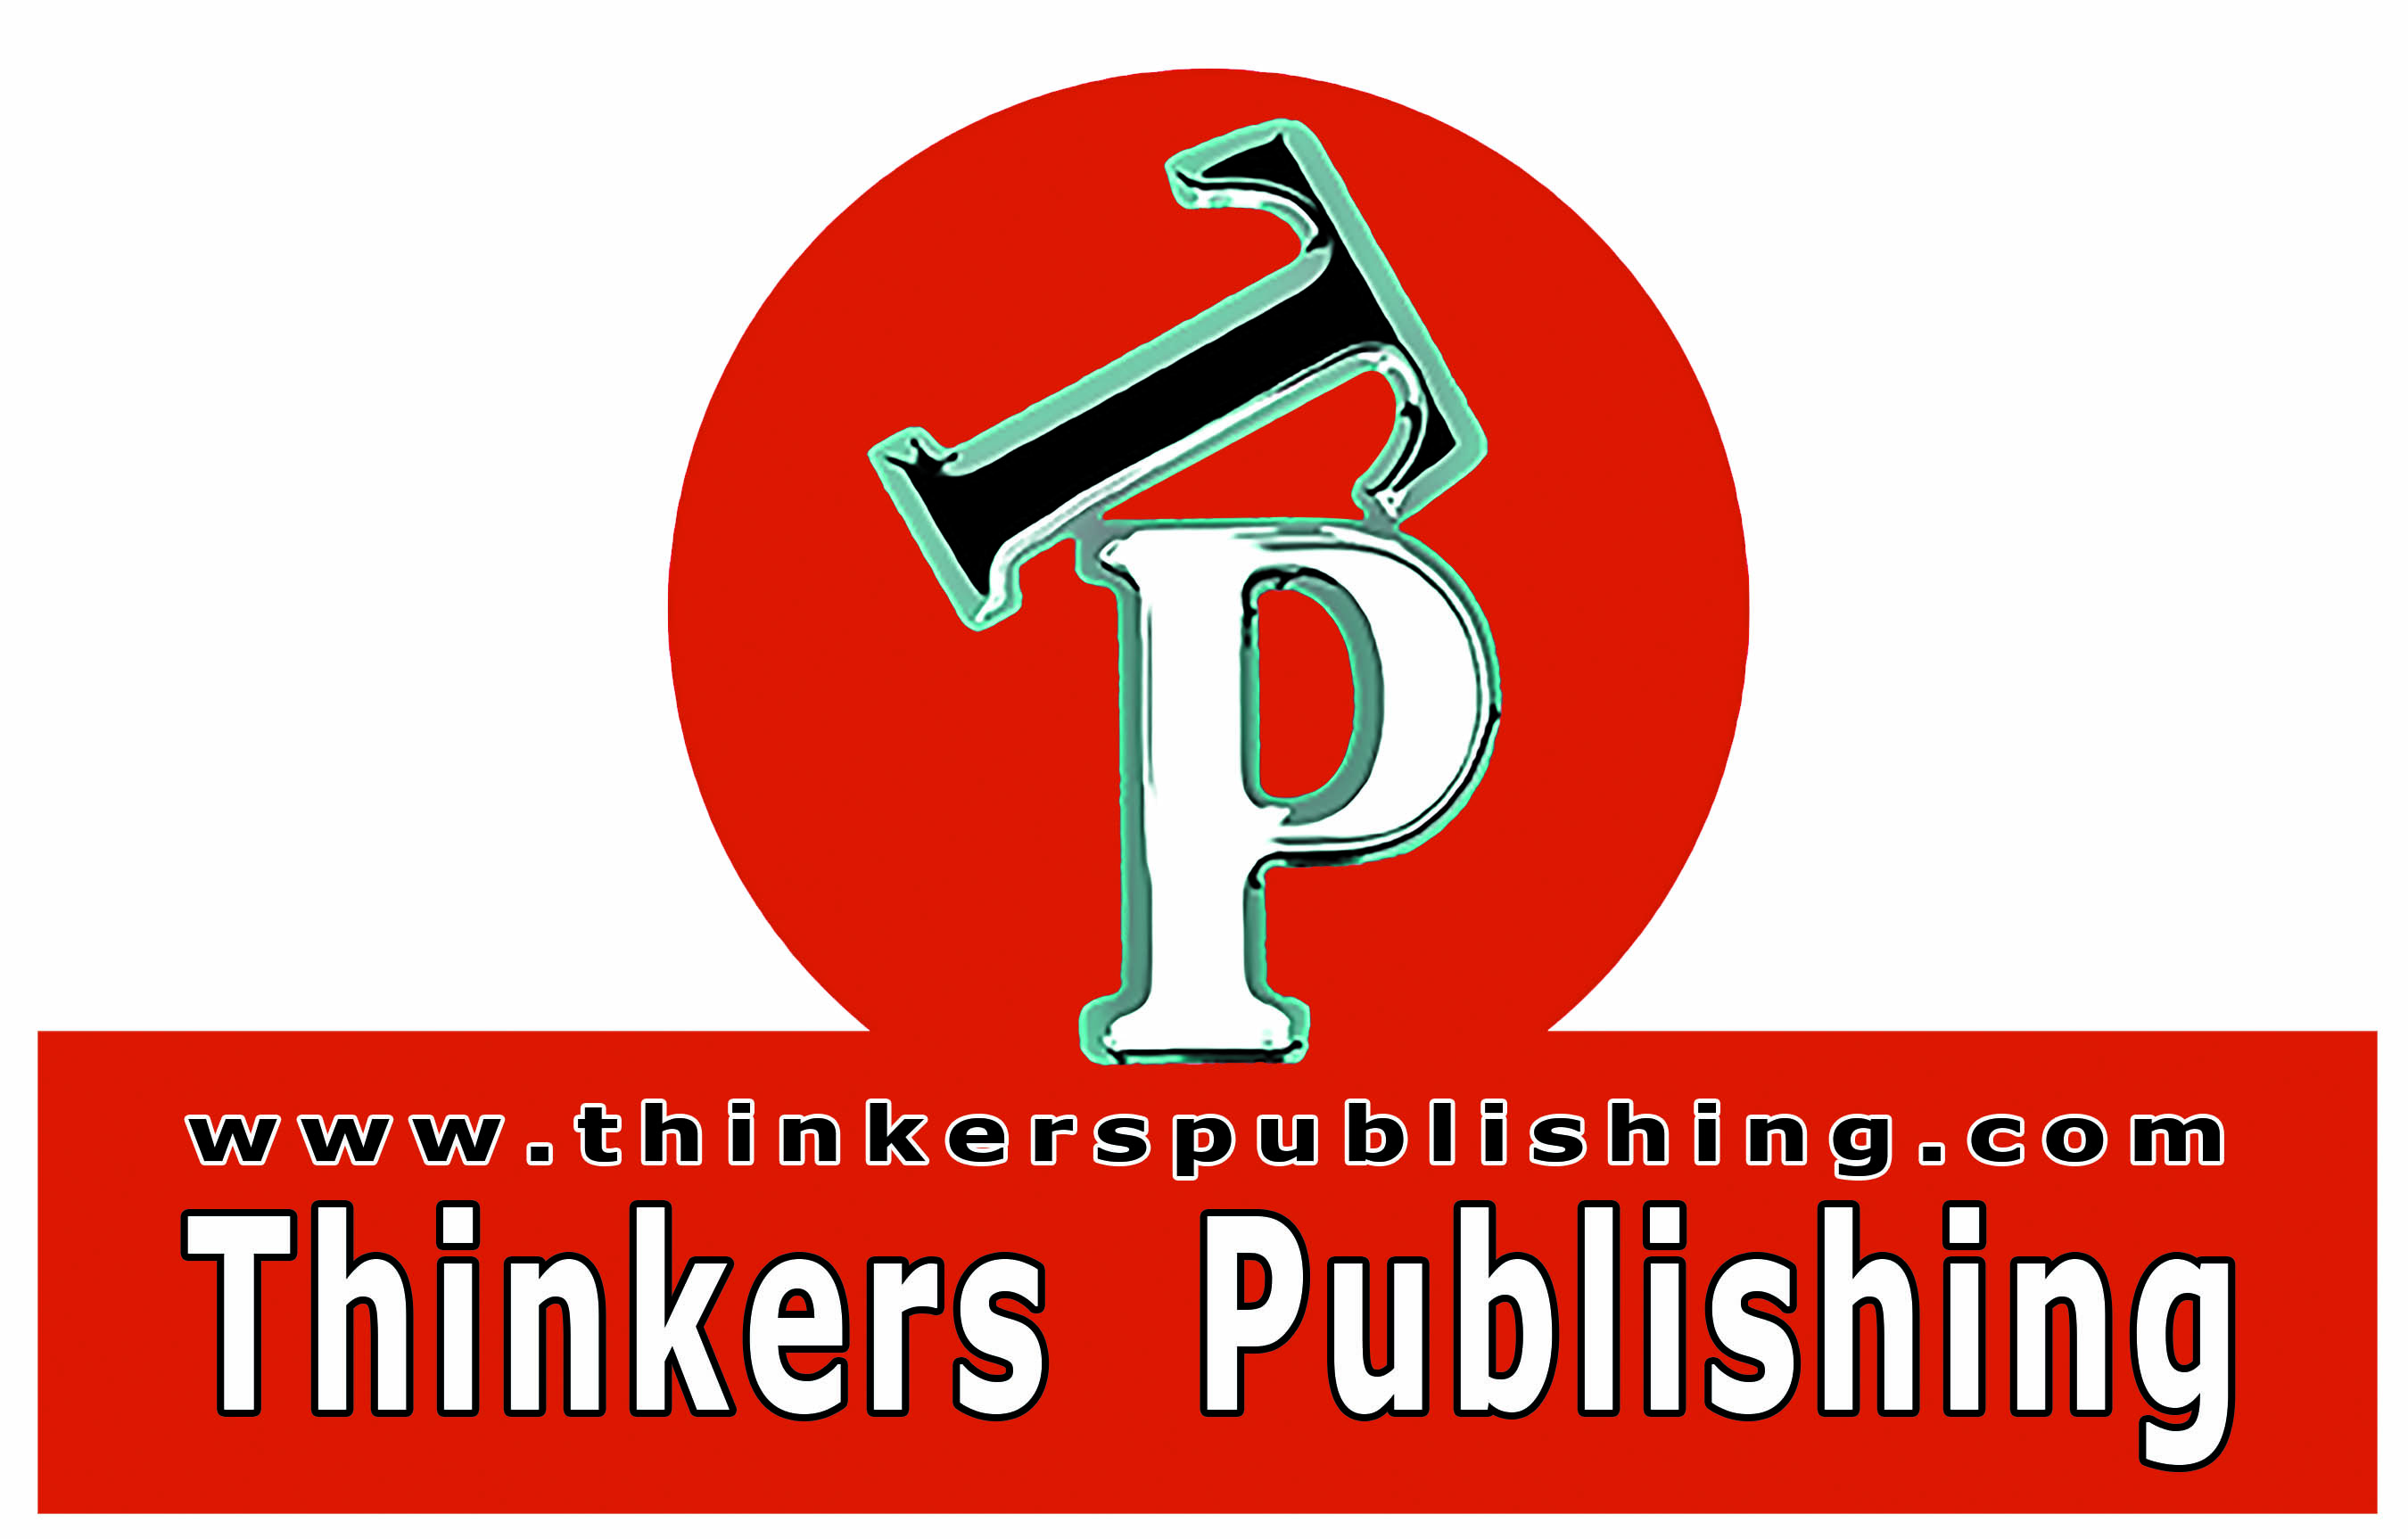 Thinkers Publishing